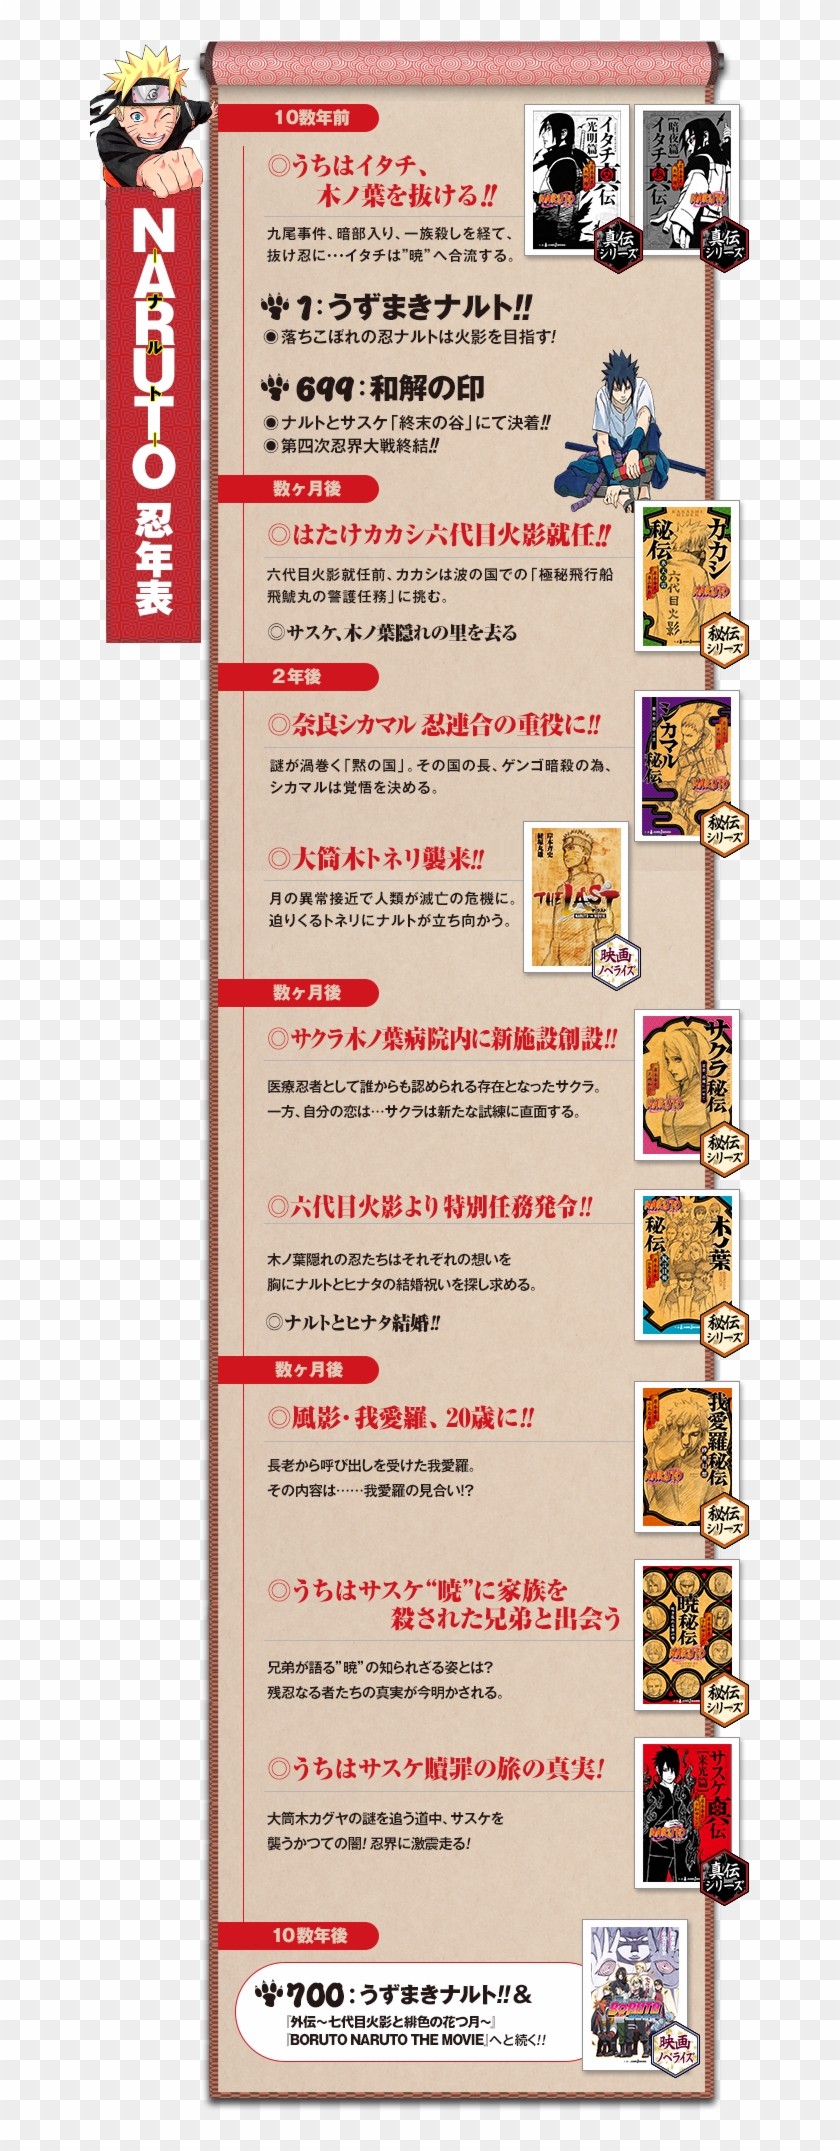 Shonen Jump Novel Timeline ナルト 我 愛 羅 結婚 相手 Hd Png Download 661x87 Pngfind